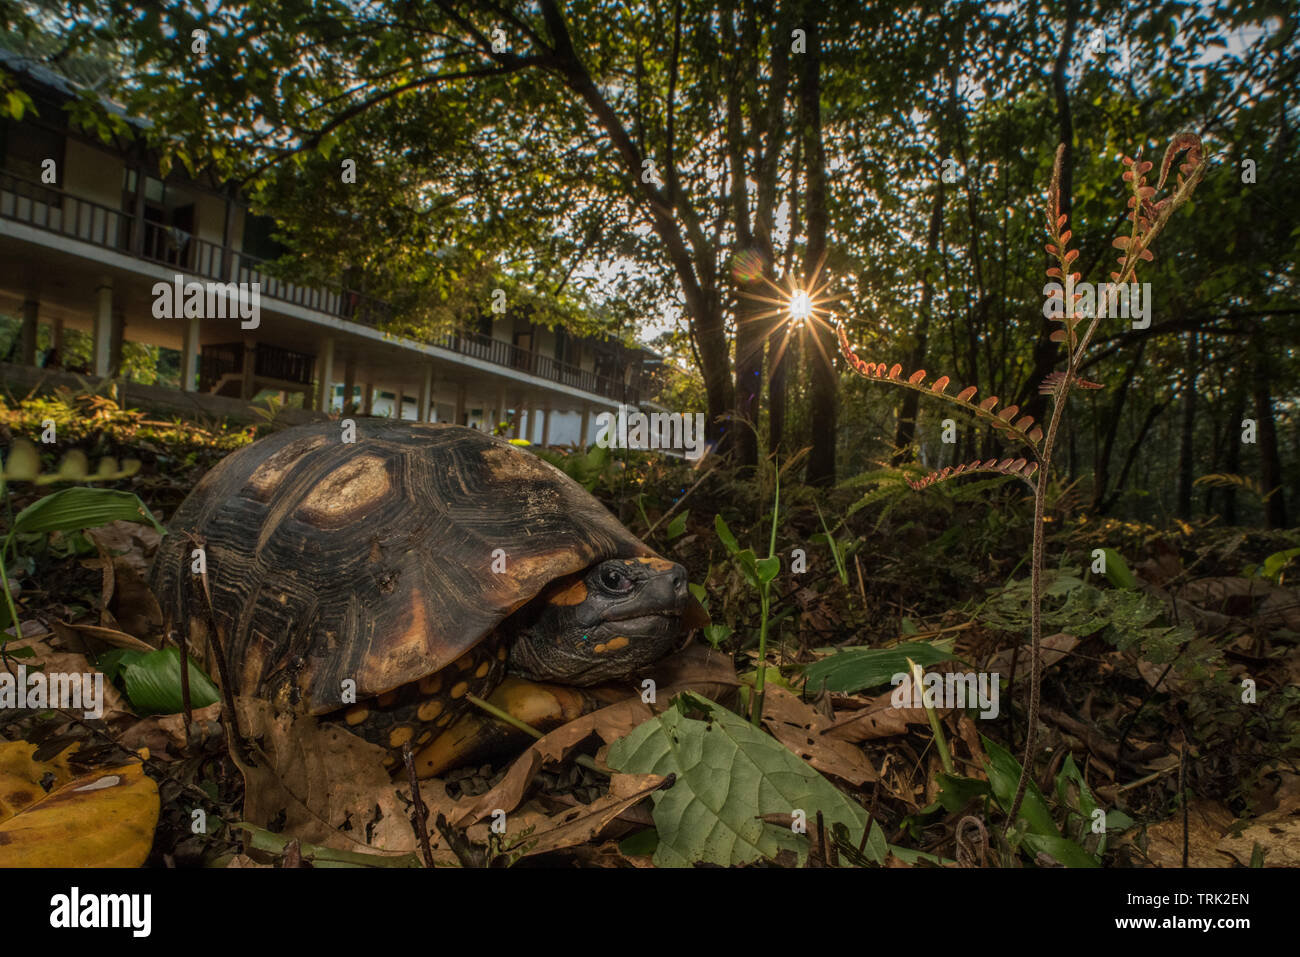 La tortue à pattes jaunes (Chelonoidis denticulata) une espèce de tortue de la région néotropicale en Amérique du Sud. Banque D'Images